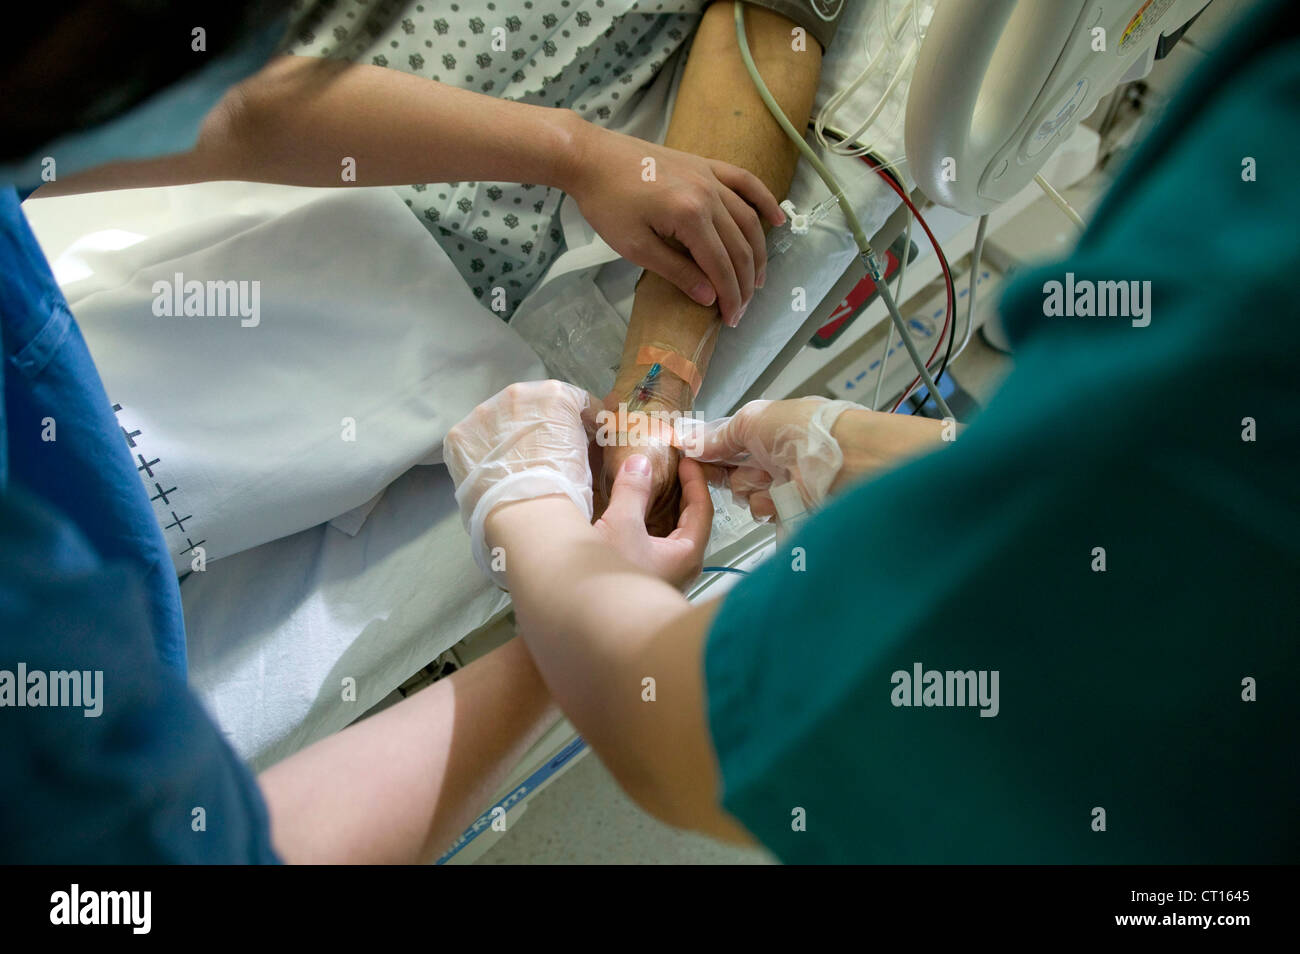 Un paciente tiene un gotero intravenoso insertado en el brazo, en una unidad de cuidados intensivos. Foto de stock